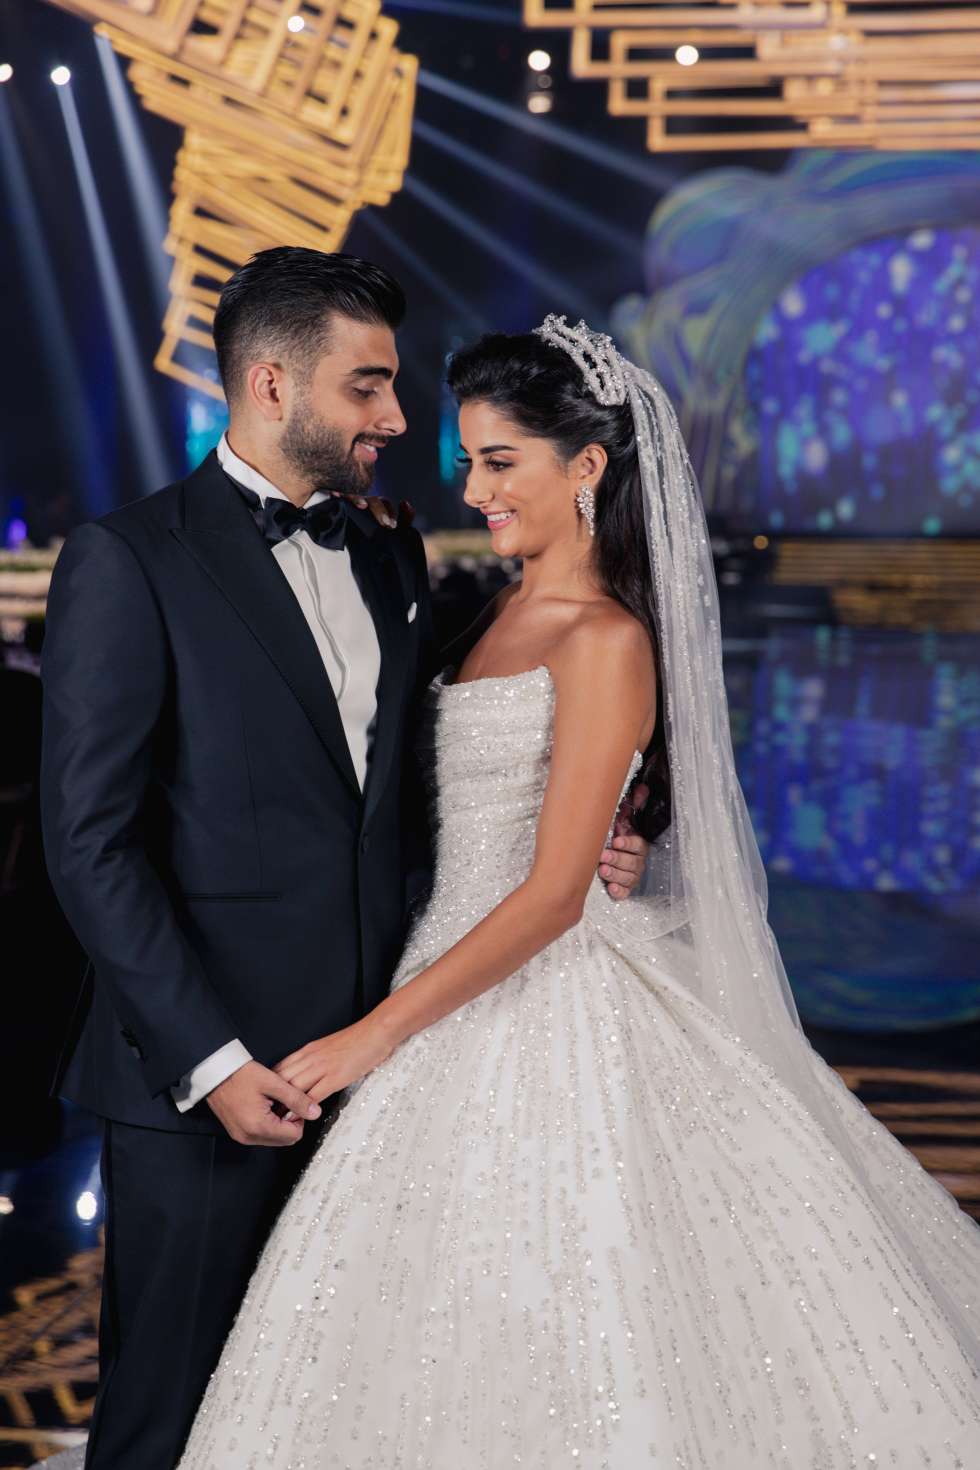 حفل زفاف من وحي الحب والضوء من تنظيم آي كاندي في لبنان